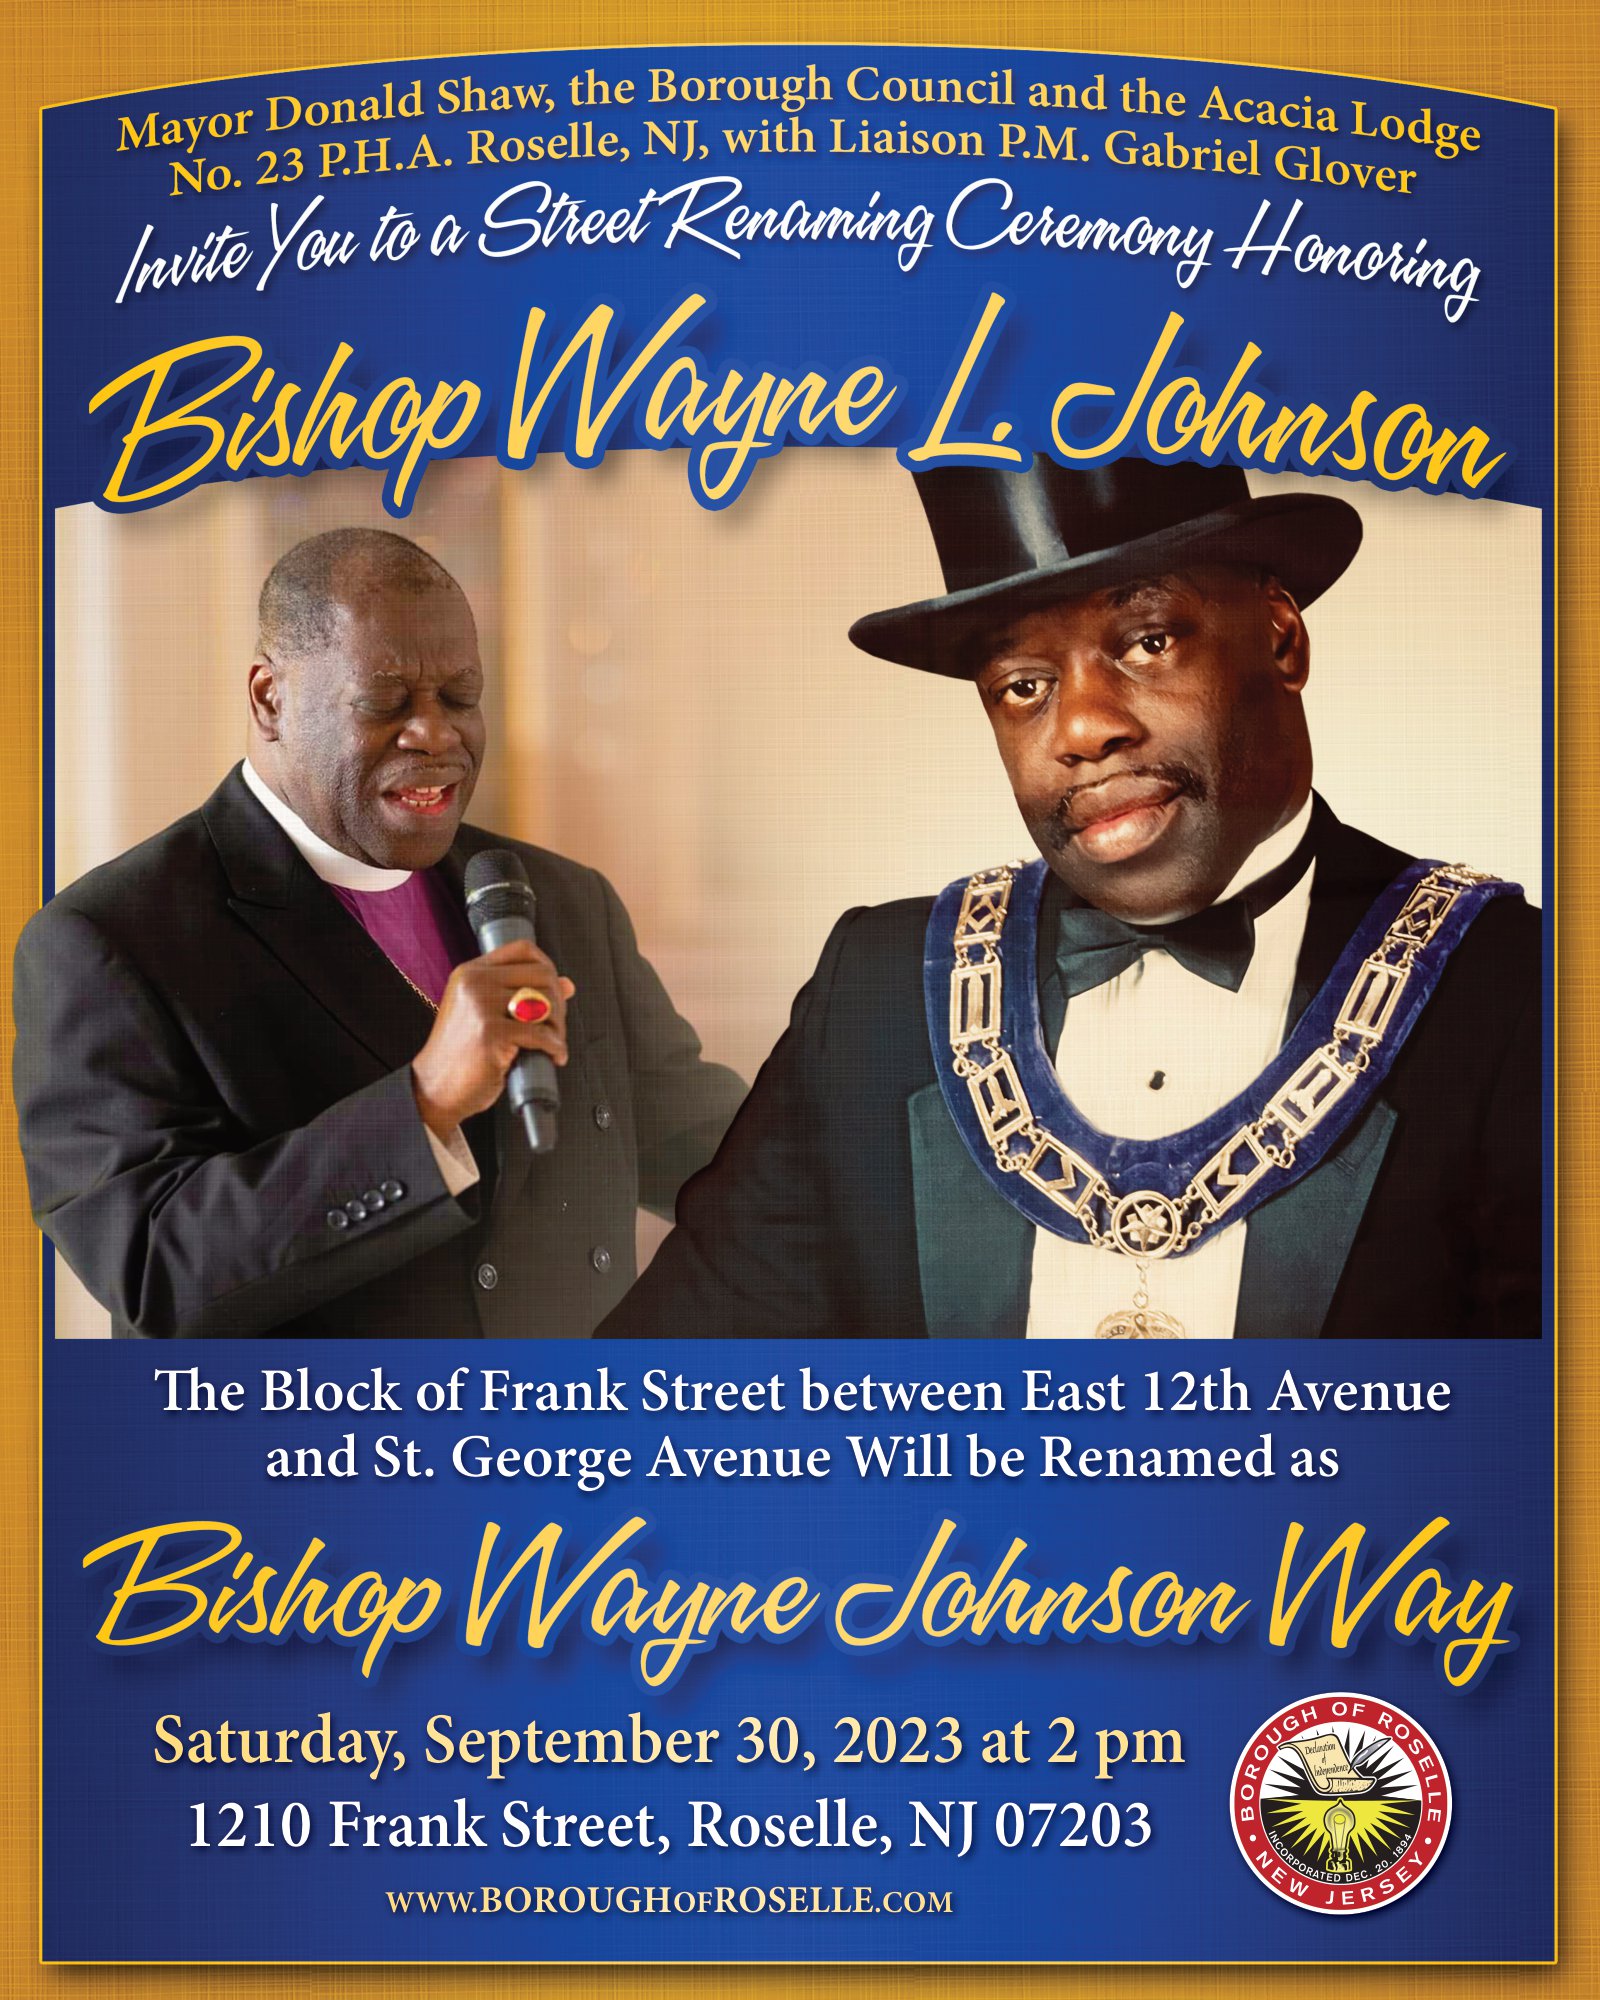 Bishop Wayne L Johnson Way